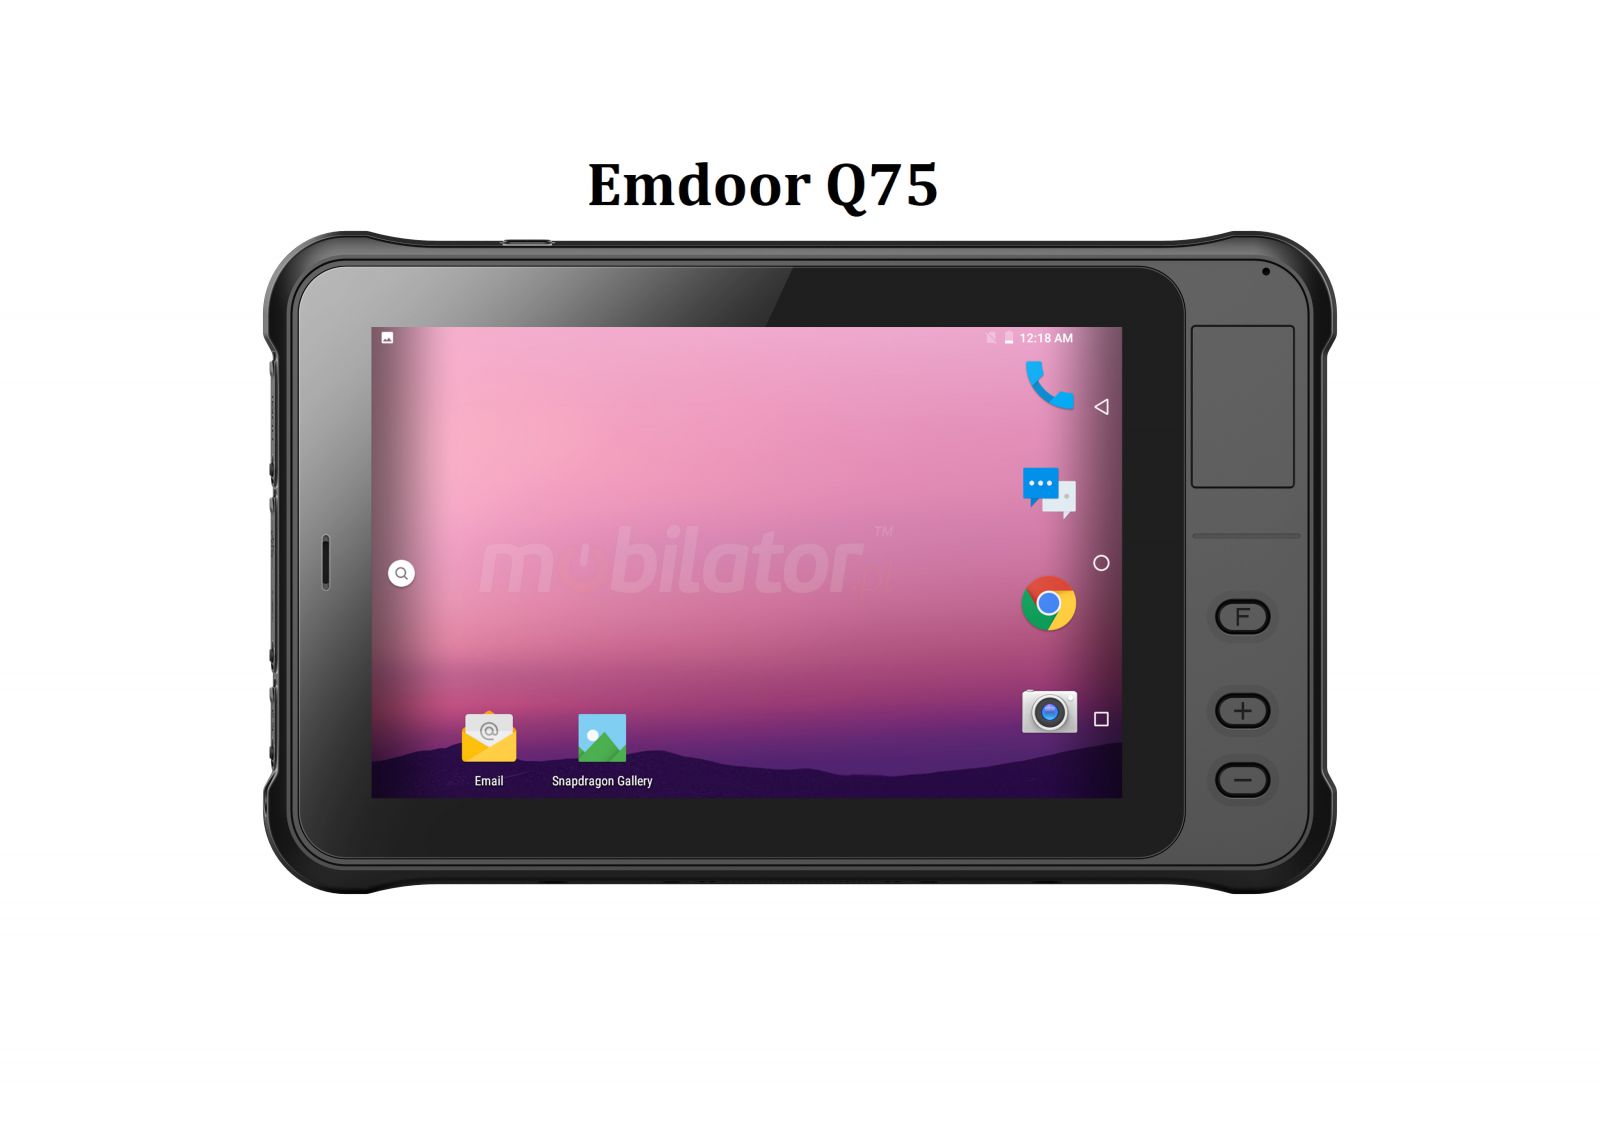 Emdoor Q75 v.8 - odporny tablet z norm MIL-STD-810G, Androidem 10.0 GMS, 4GB RAM, 64GB ROM, UHF RFID oraz skanerem 1D Honeywell